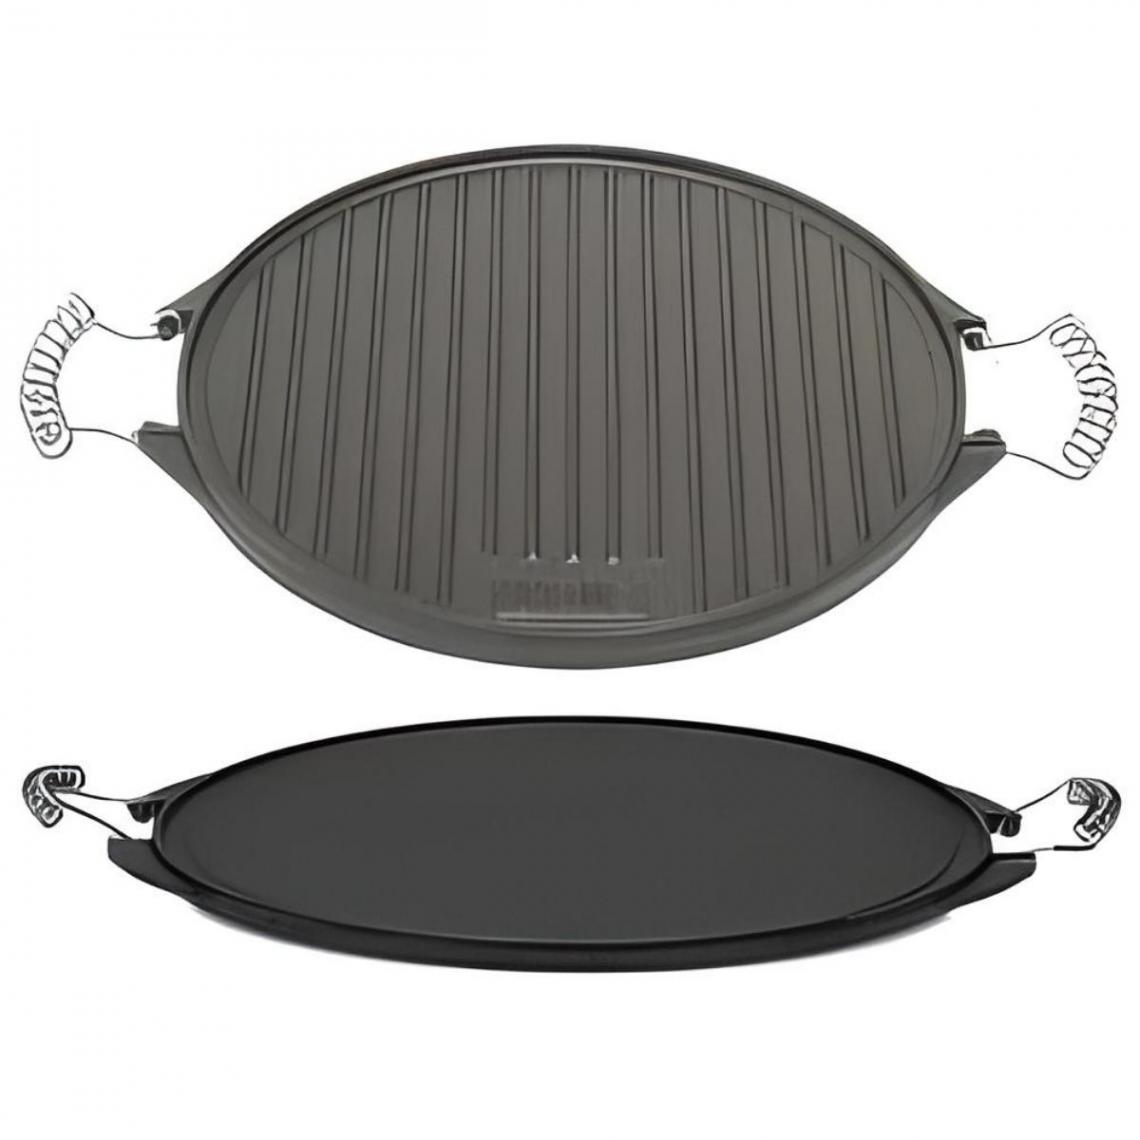 Visiodirect - Grille en fer fondu LISSE/COURBE coloris noir - Ø 52 cm - Pierrade, grill